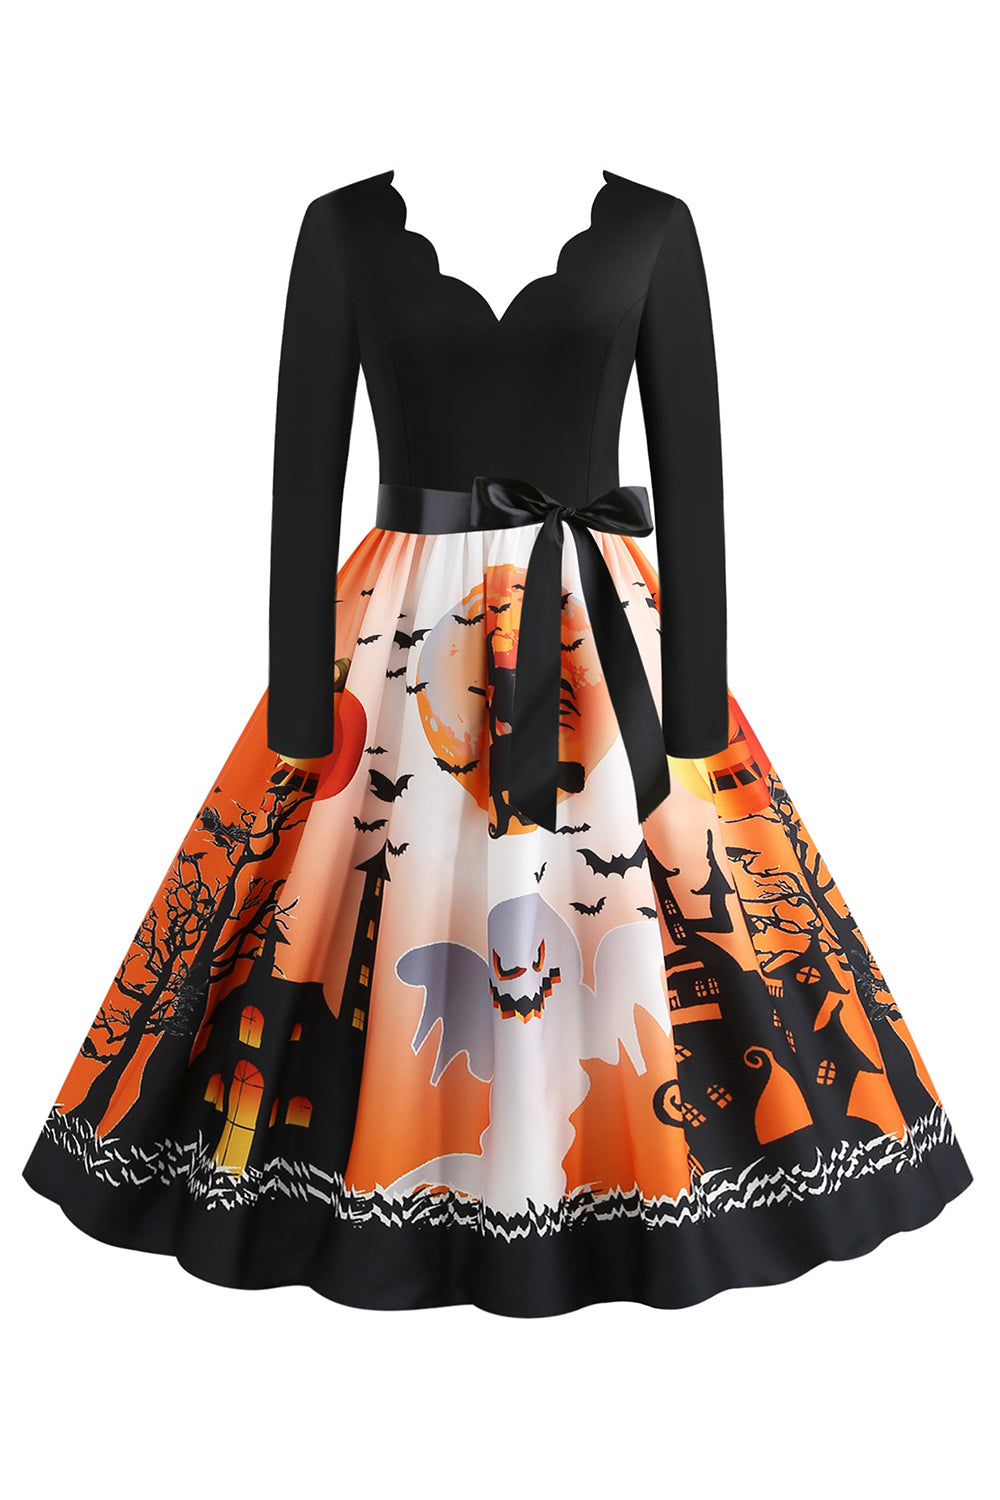 V-Neck Printed Halloween Dress with Belt